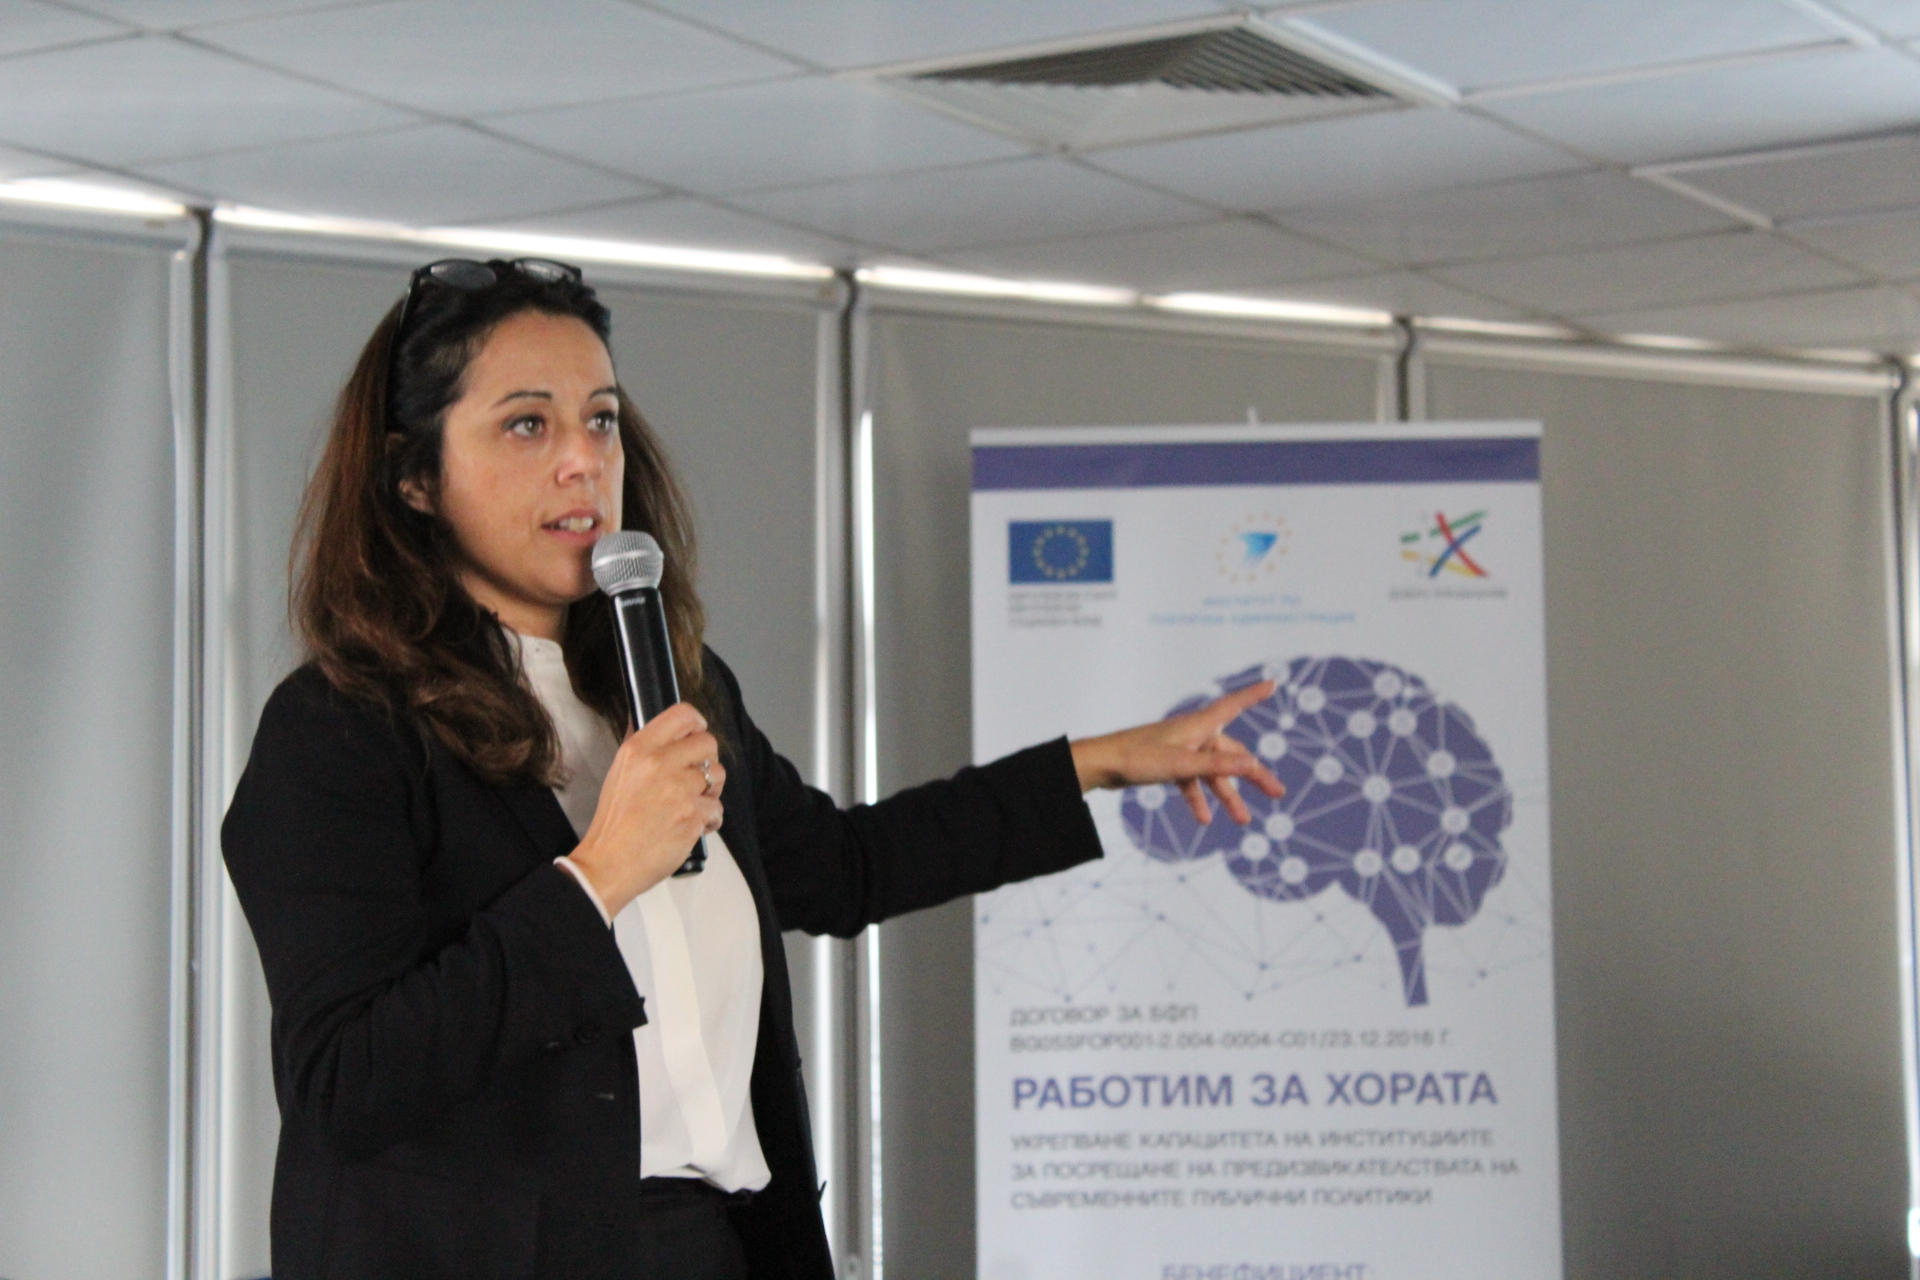 НАПА на конференцији “Европске вредности и обуке у јавној управи” у Бугарској